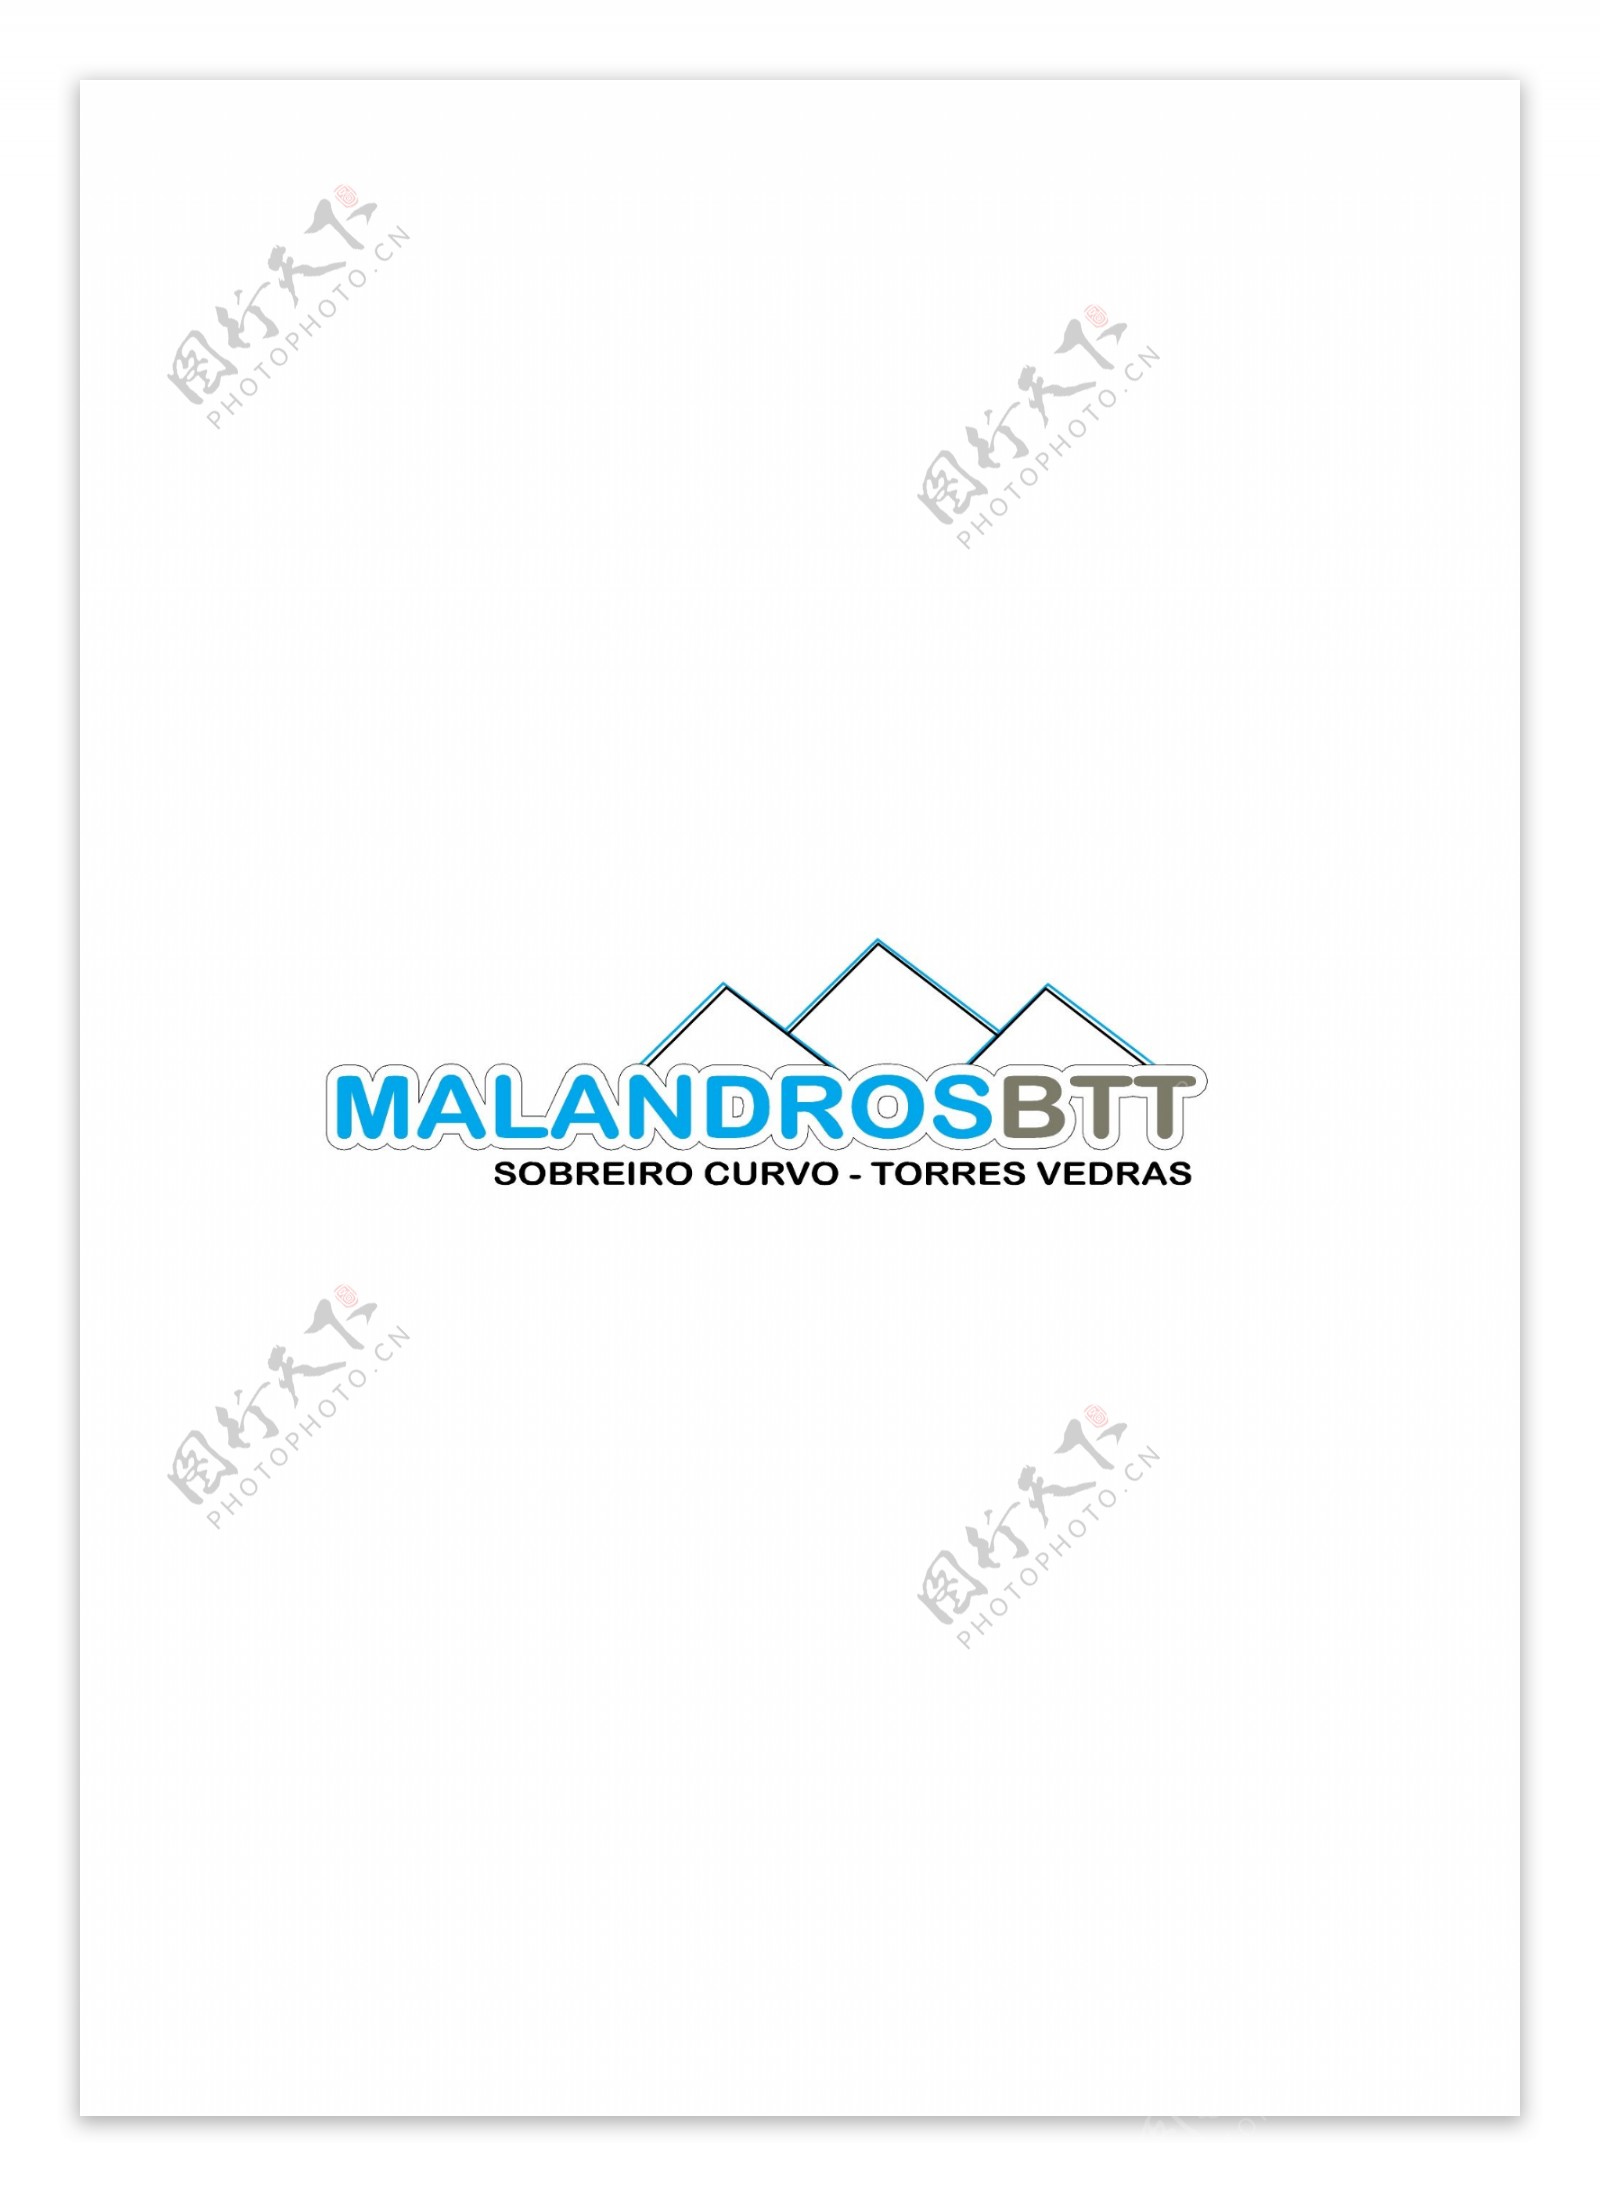 MALANDROSBTTlogo设计欣赏MALANDROSBTT体育LOGO下载标志设计欣赏